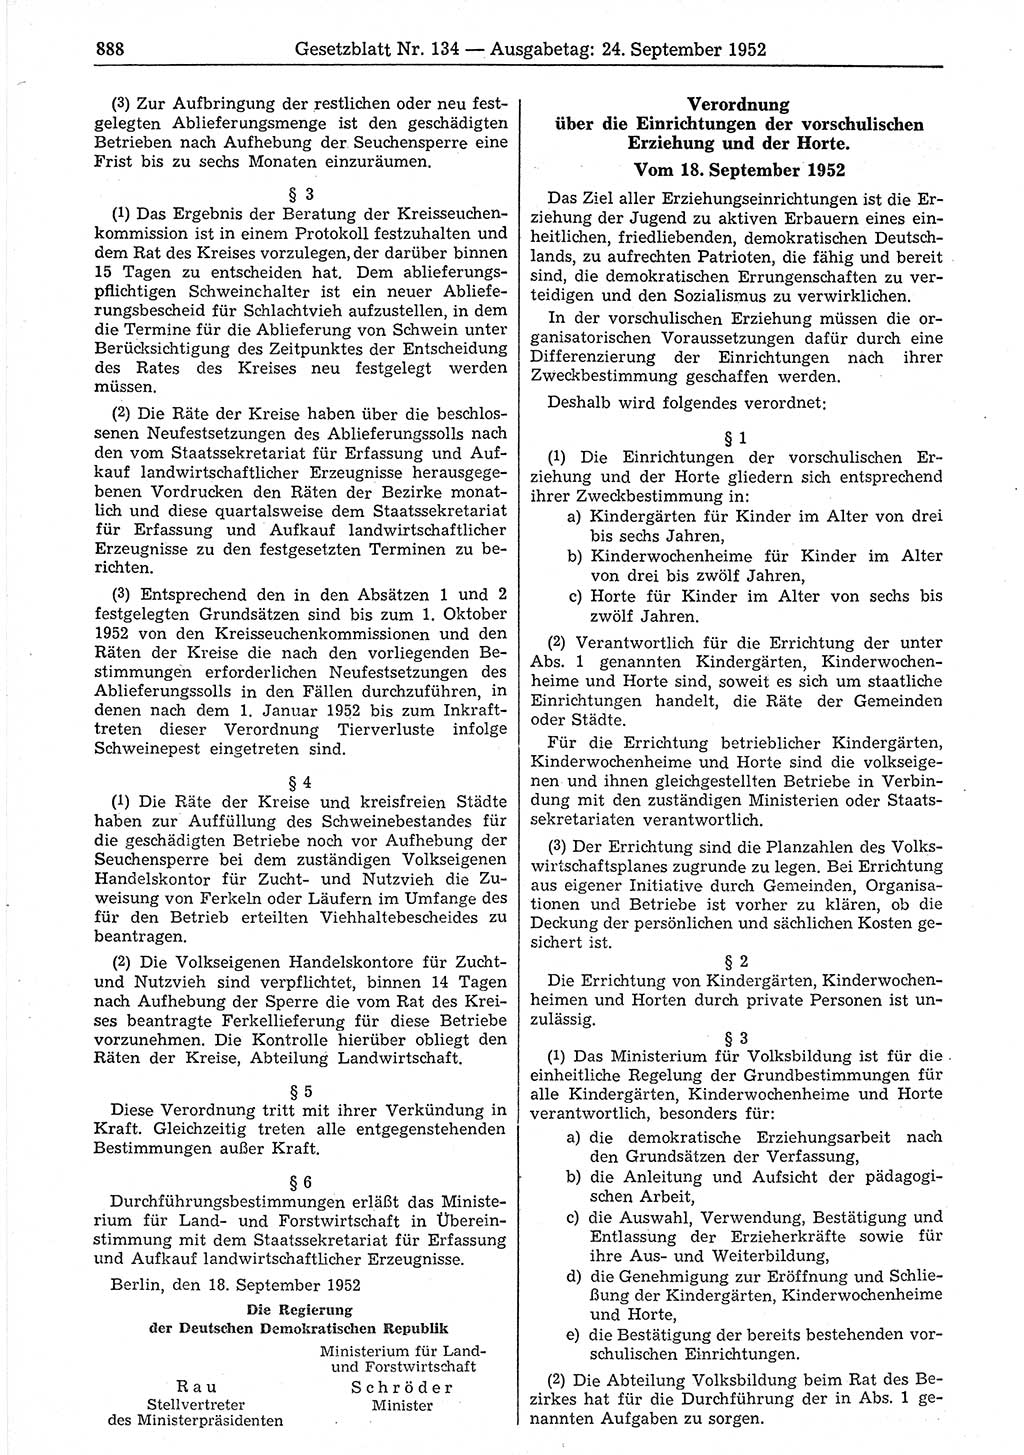 Gesetzblatt (GBl.) der Deutschen Demokratischen Republik (DDR) 1952, Seite 888 (GBl. DDR 1952, S. 888)